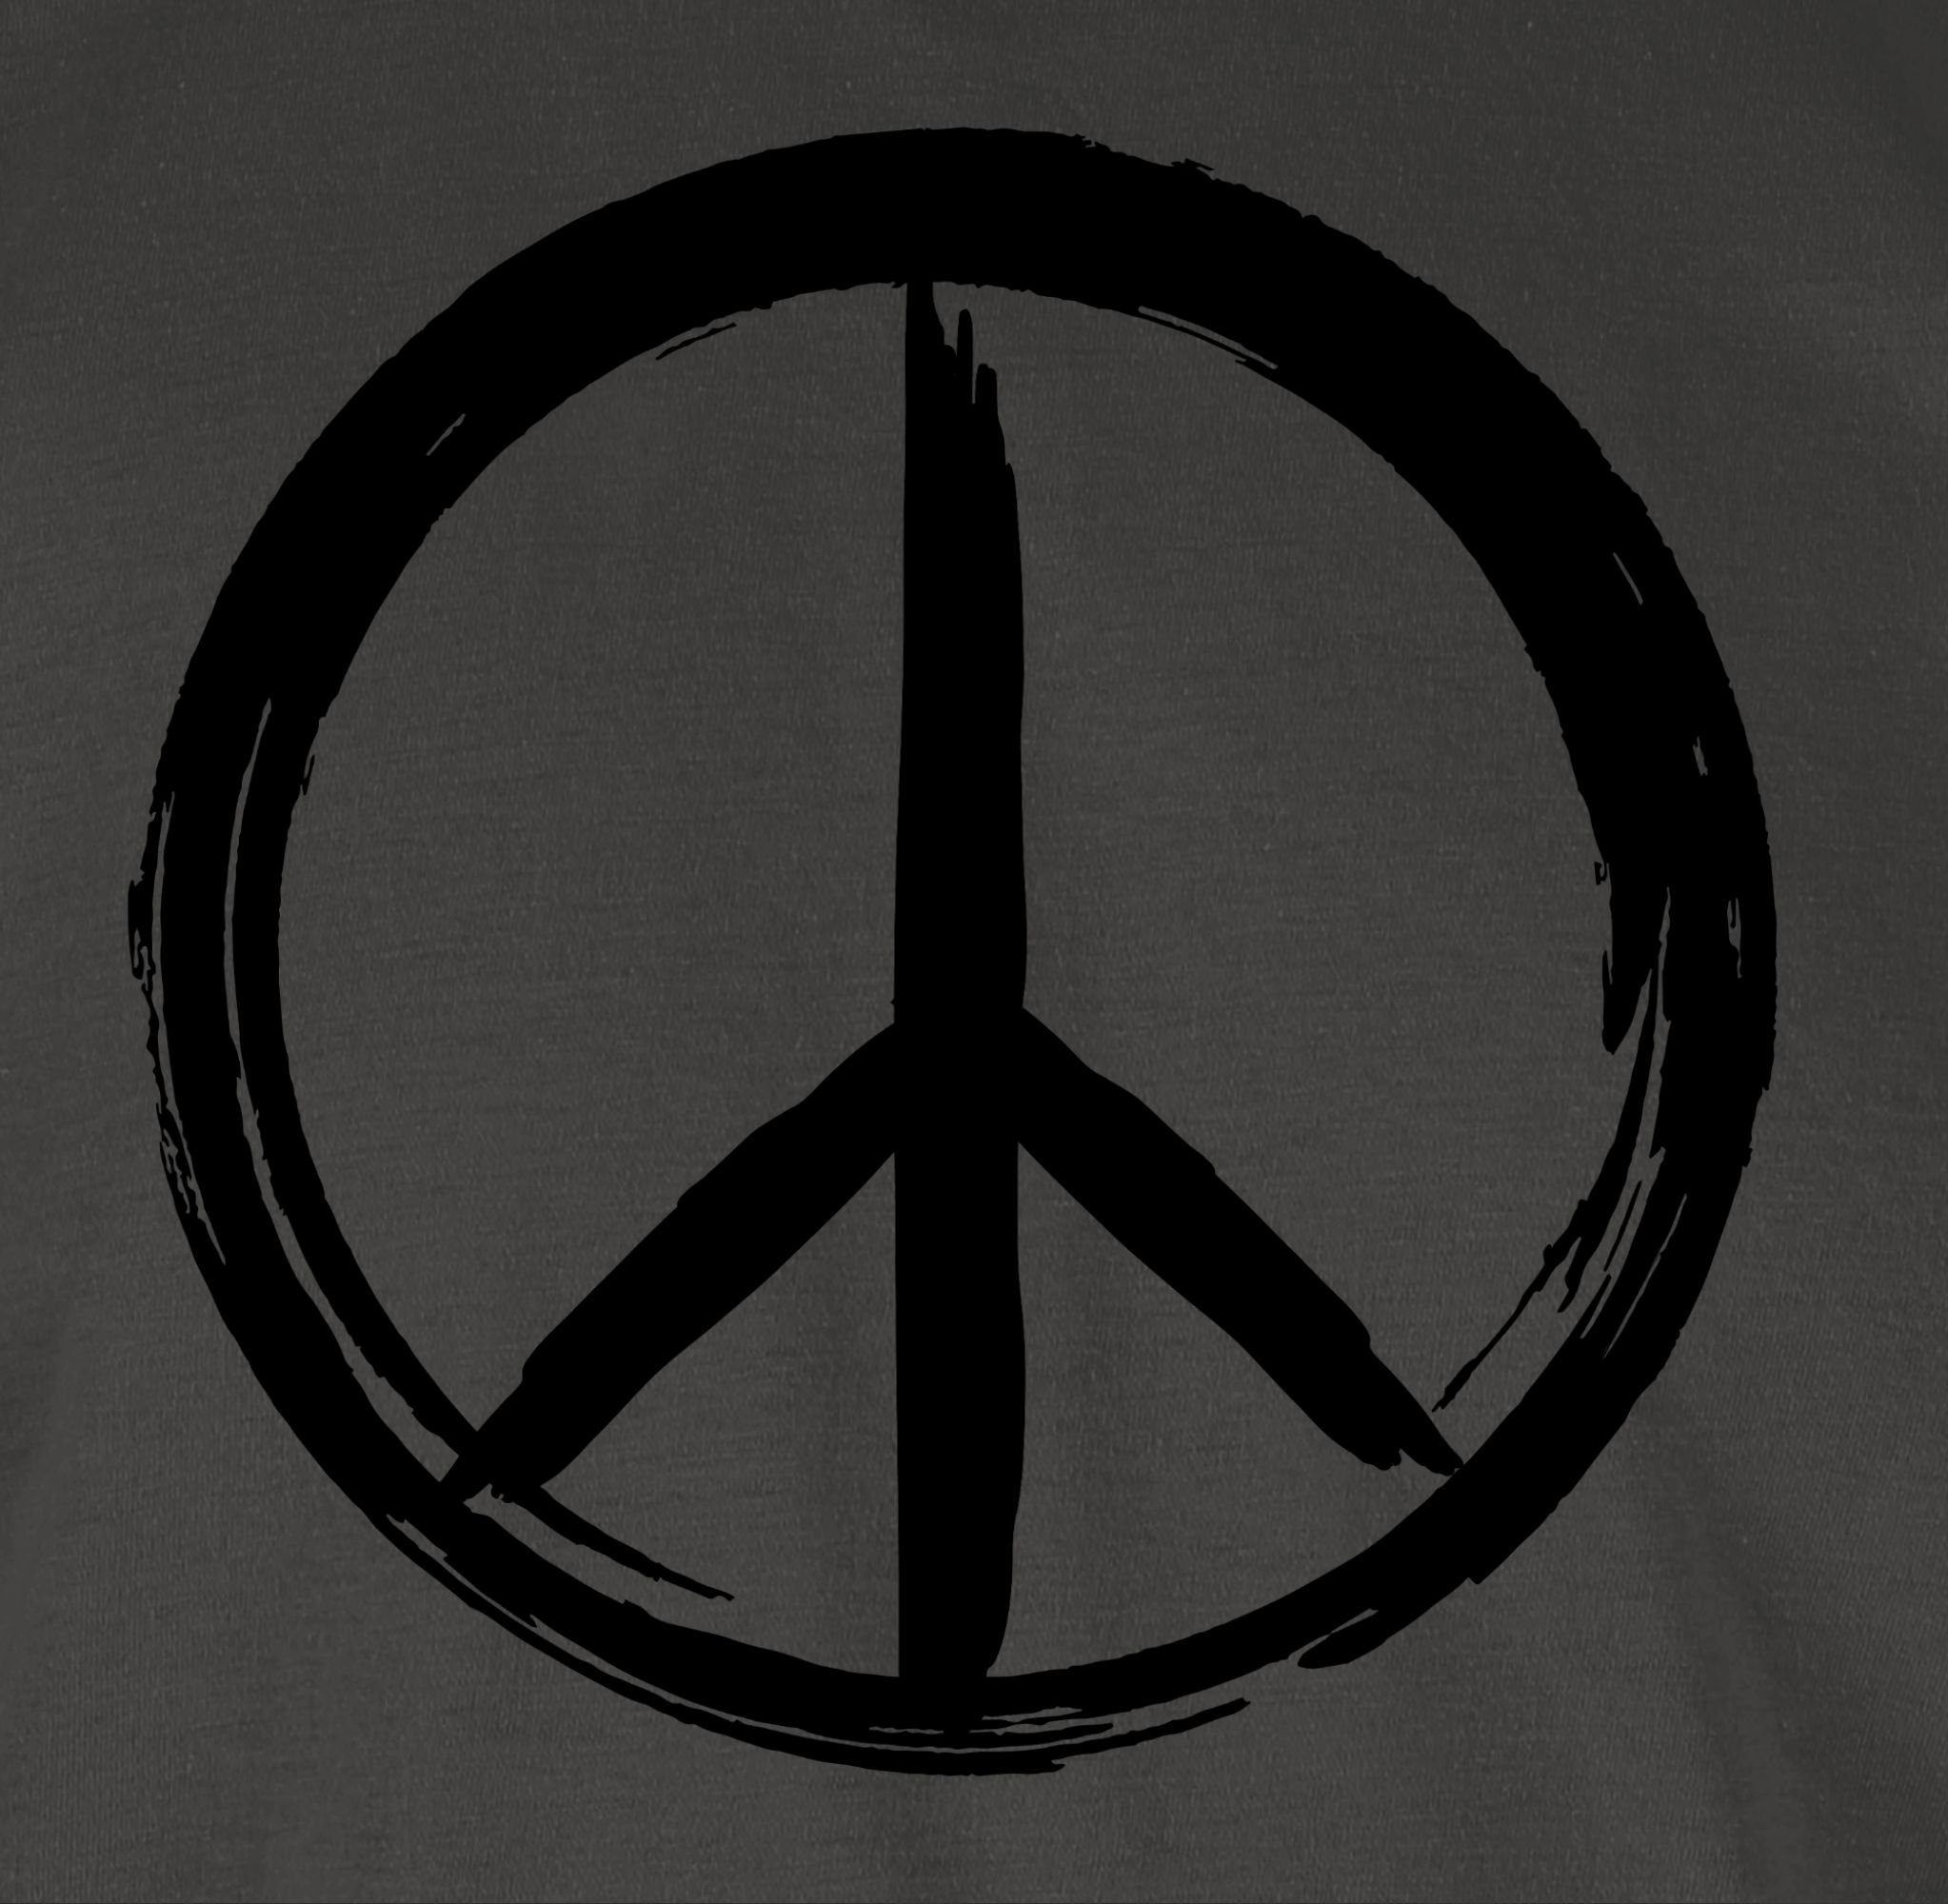 Shirtracer T-Shirt Peace Zeichen Statement Optik 2 Pinsel Dunkelgrau Sprüche schwarz 